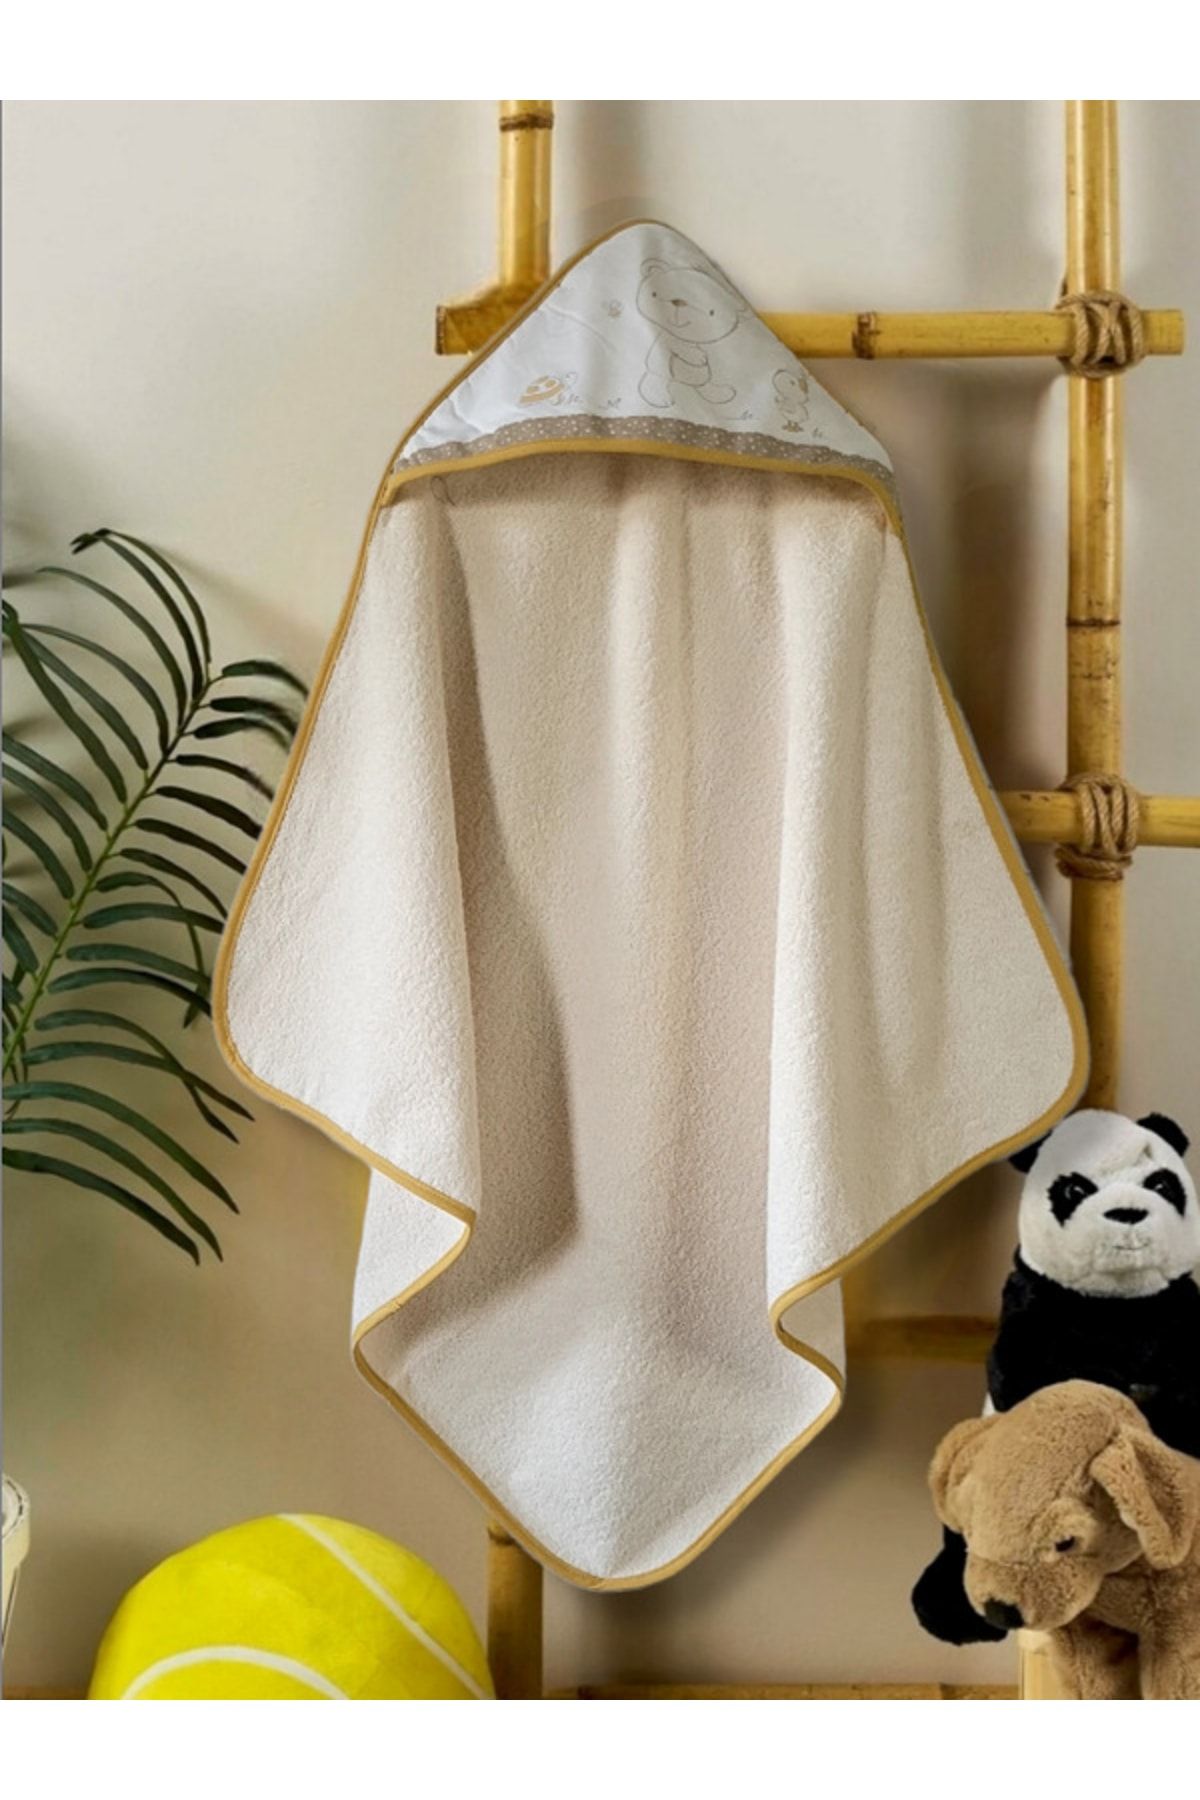 Alpar Tekstil Pamuklu Yumuşacık Kız-erkek Bebek Banyo Havlu Kundak 75*75 Cm Krem/ayıcık